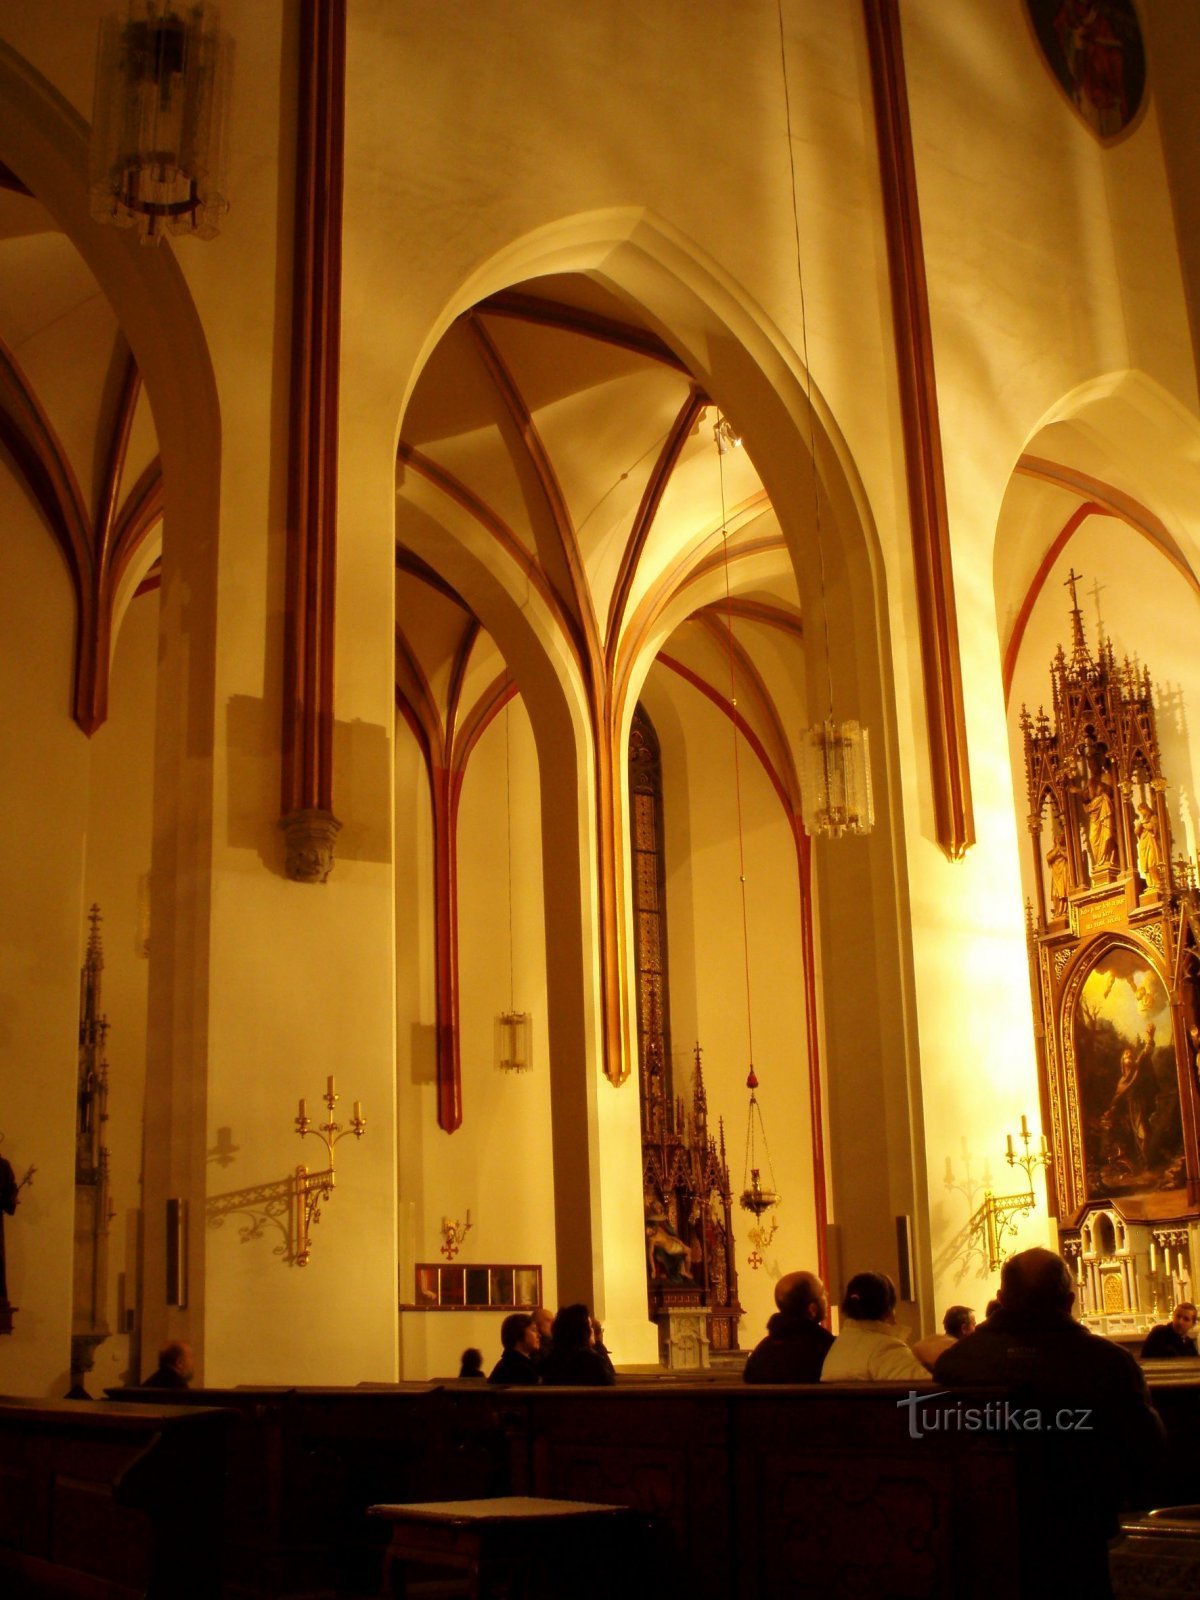 聖大聖堂の内部聖の祭壇を持つ精霊右隅のアントニン・ポステヴニク (H